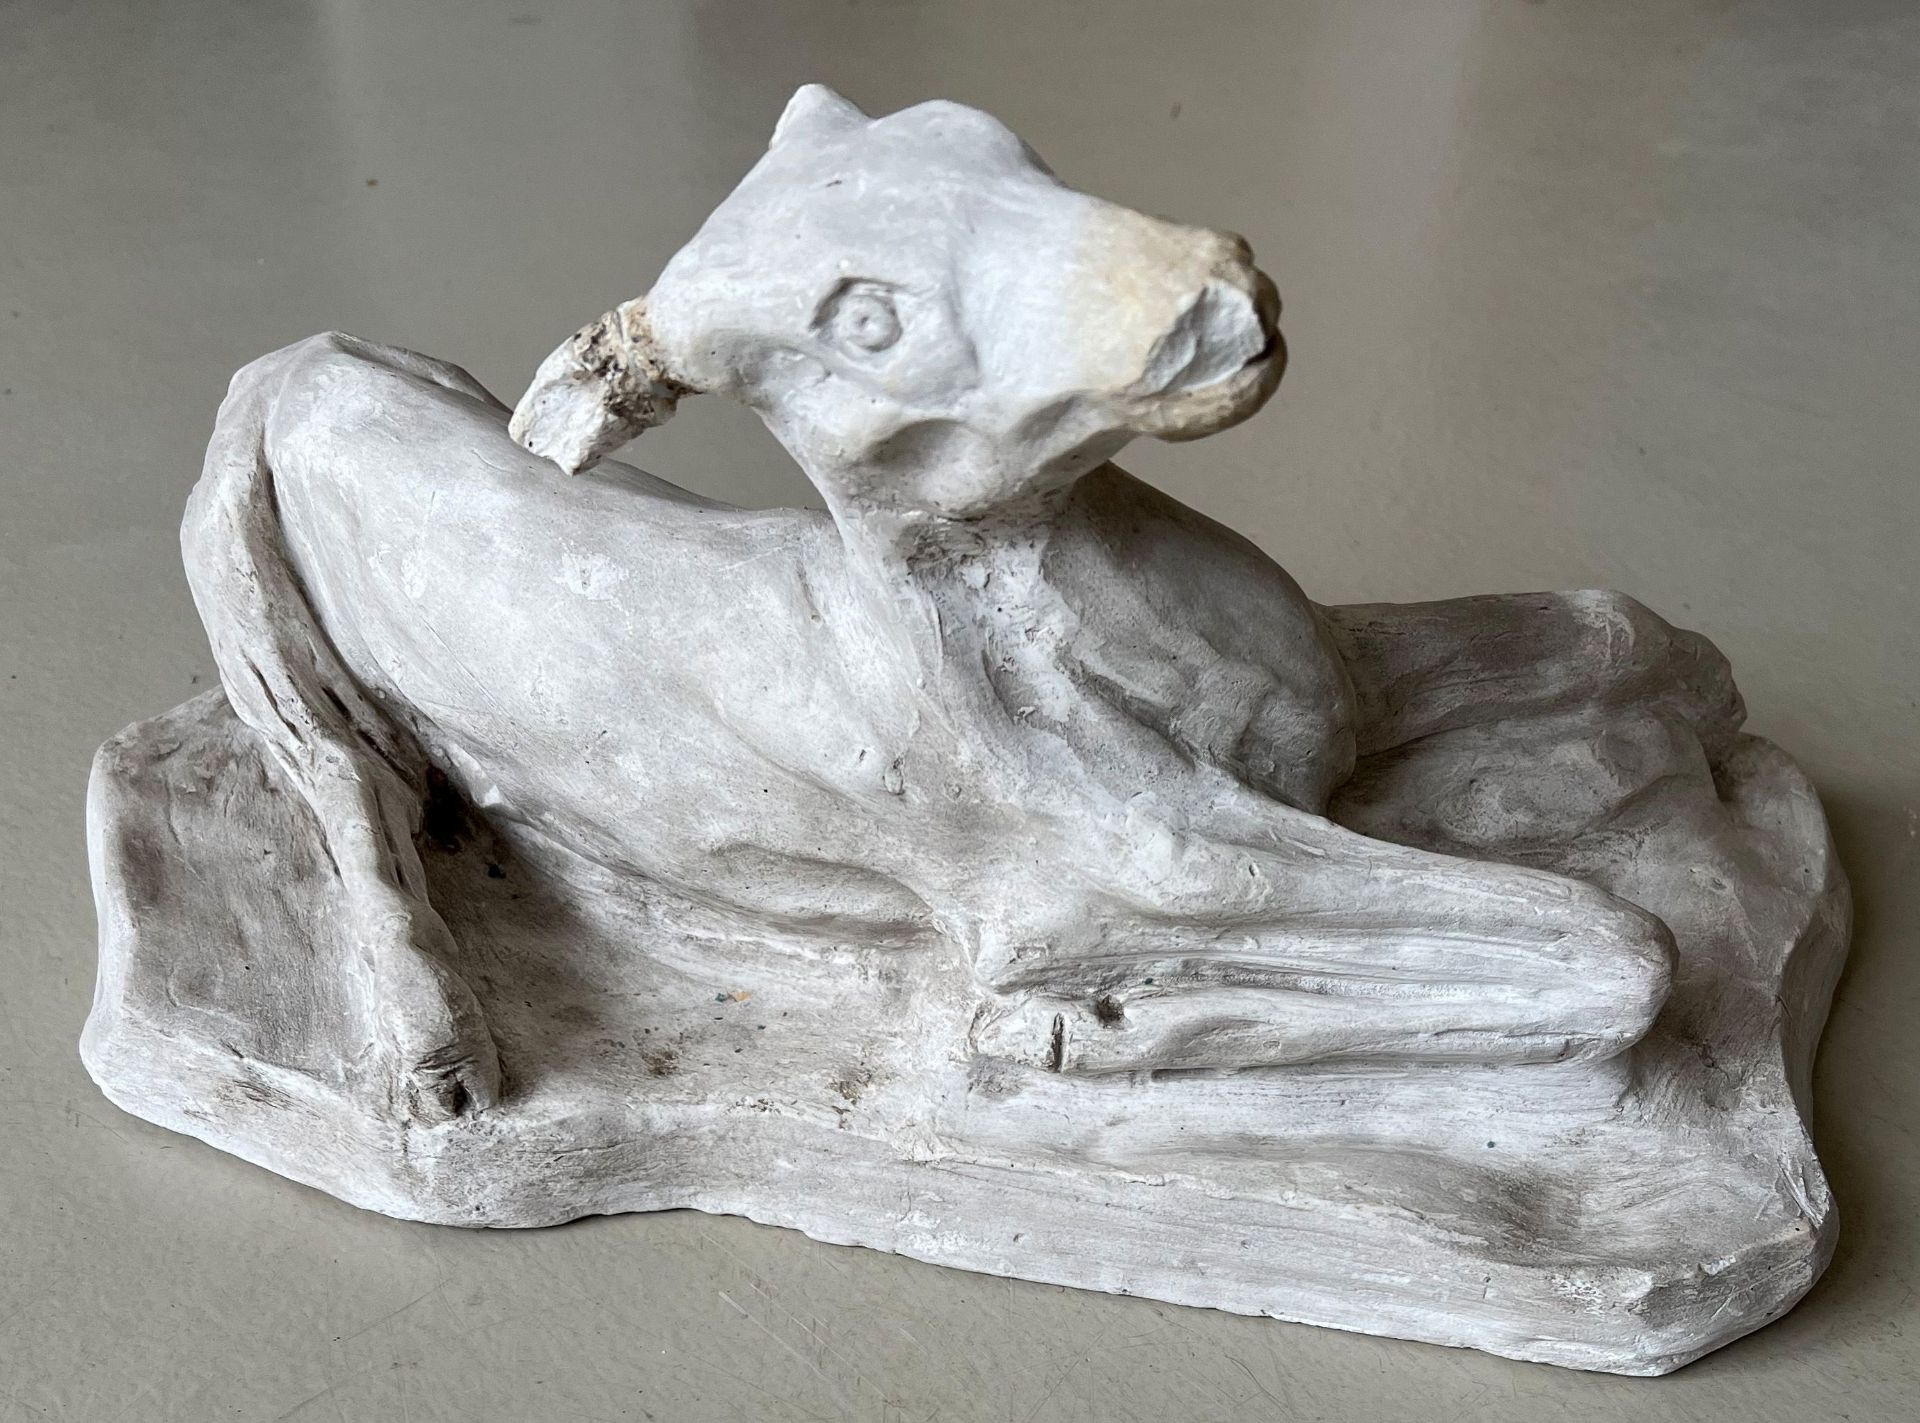 Reh, Stuck/ Roe deer, stucco. Bildhauer aus Tübingen, ein Ohr fehlt, Altersspuren, 42 x 24 x 20 cm - Image 2 of 6